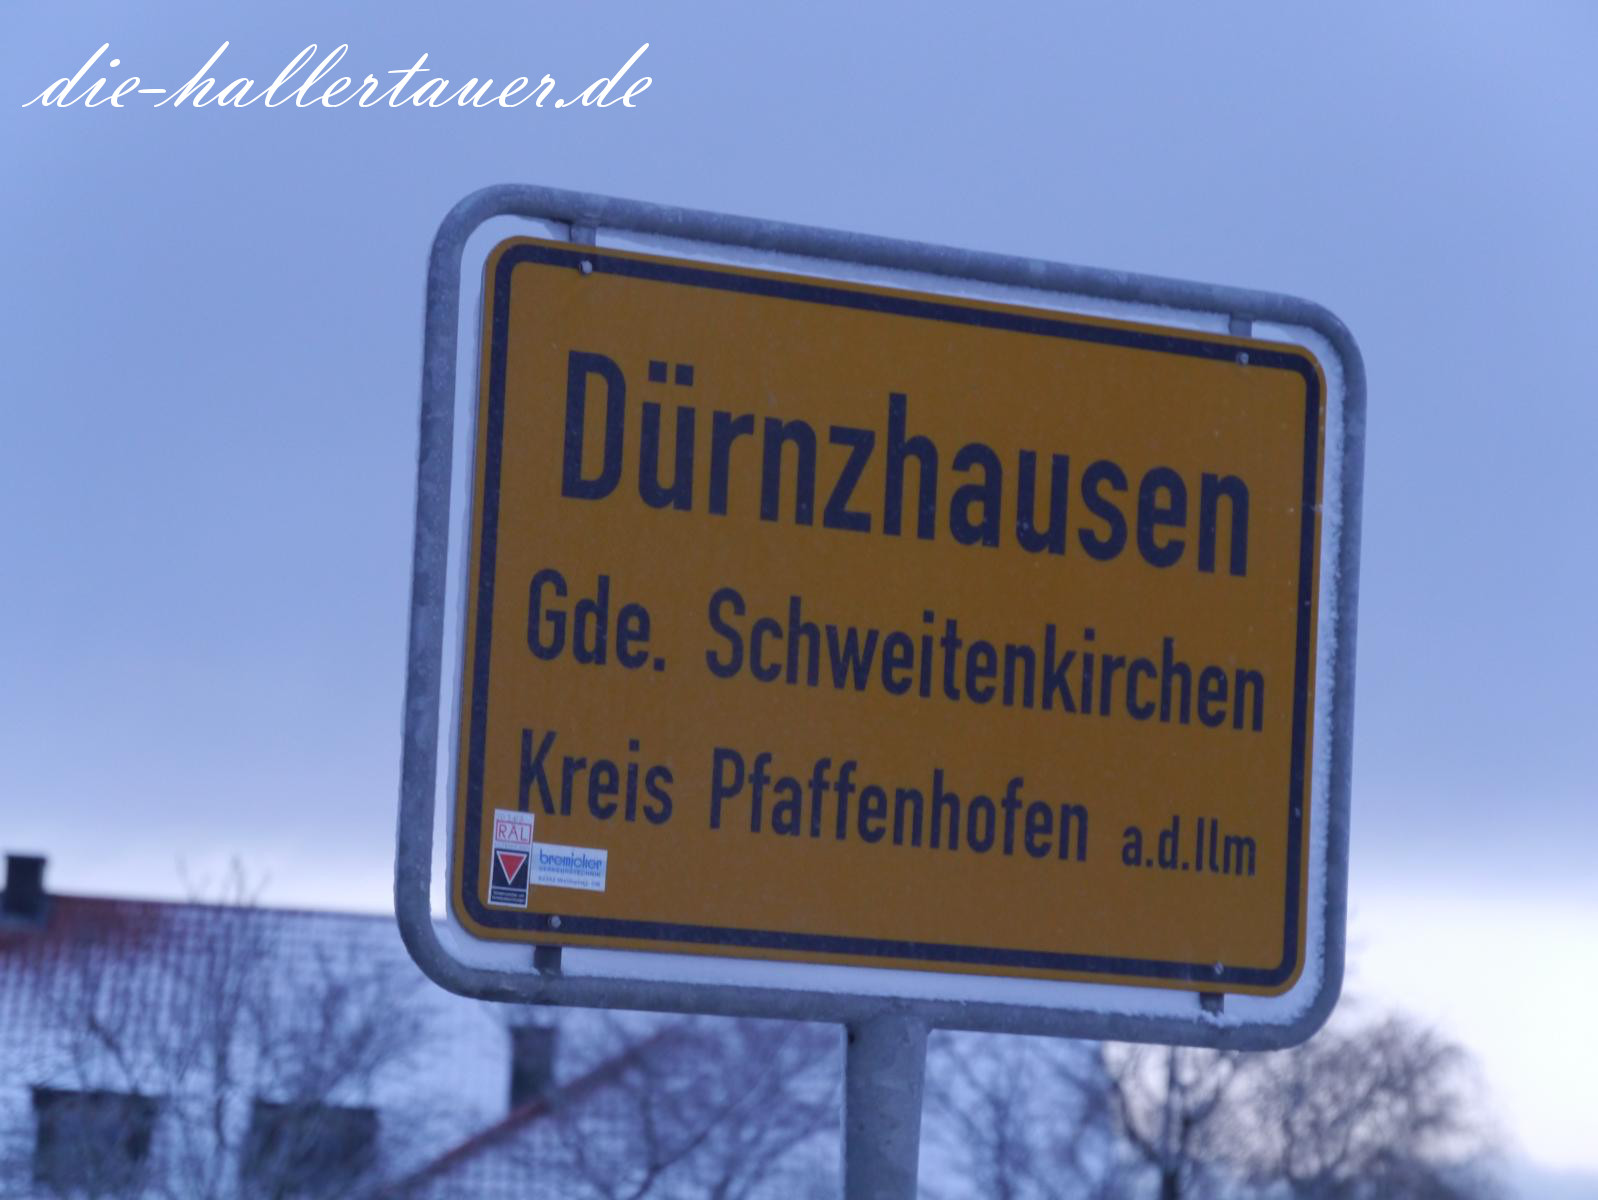 Dürnzhausen